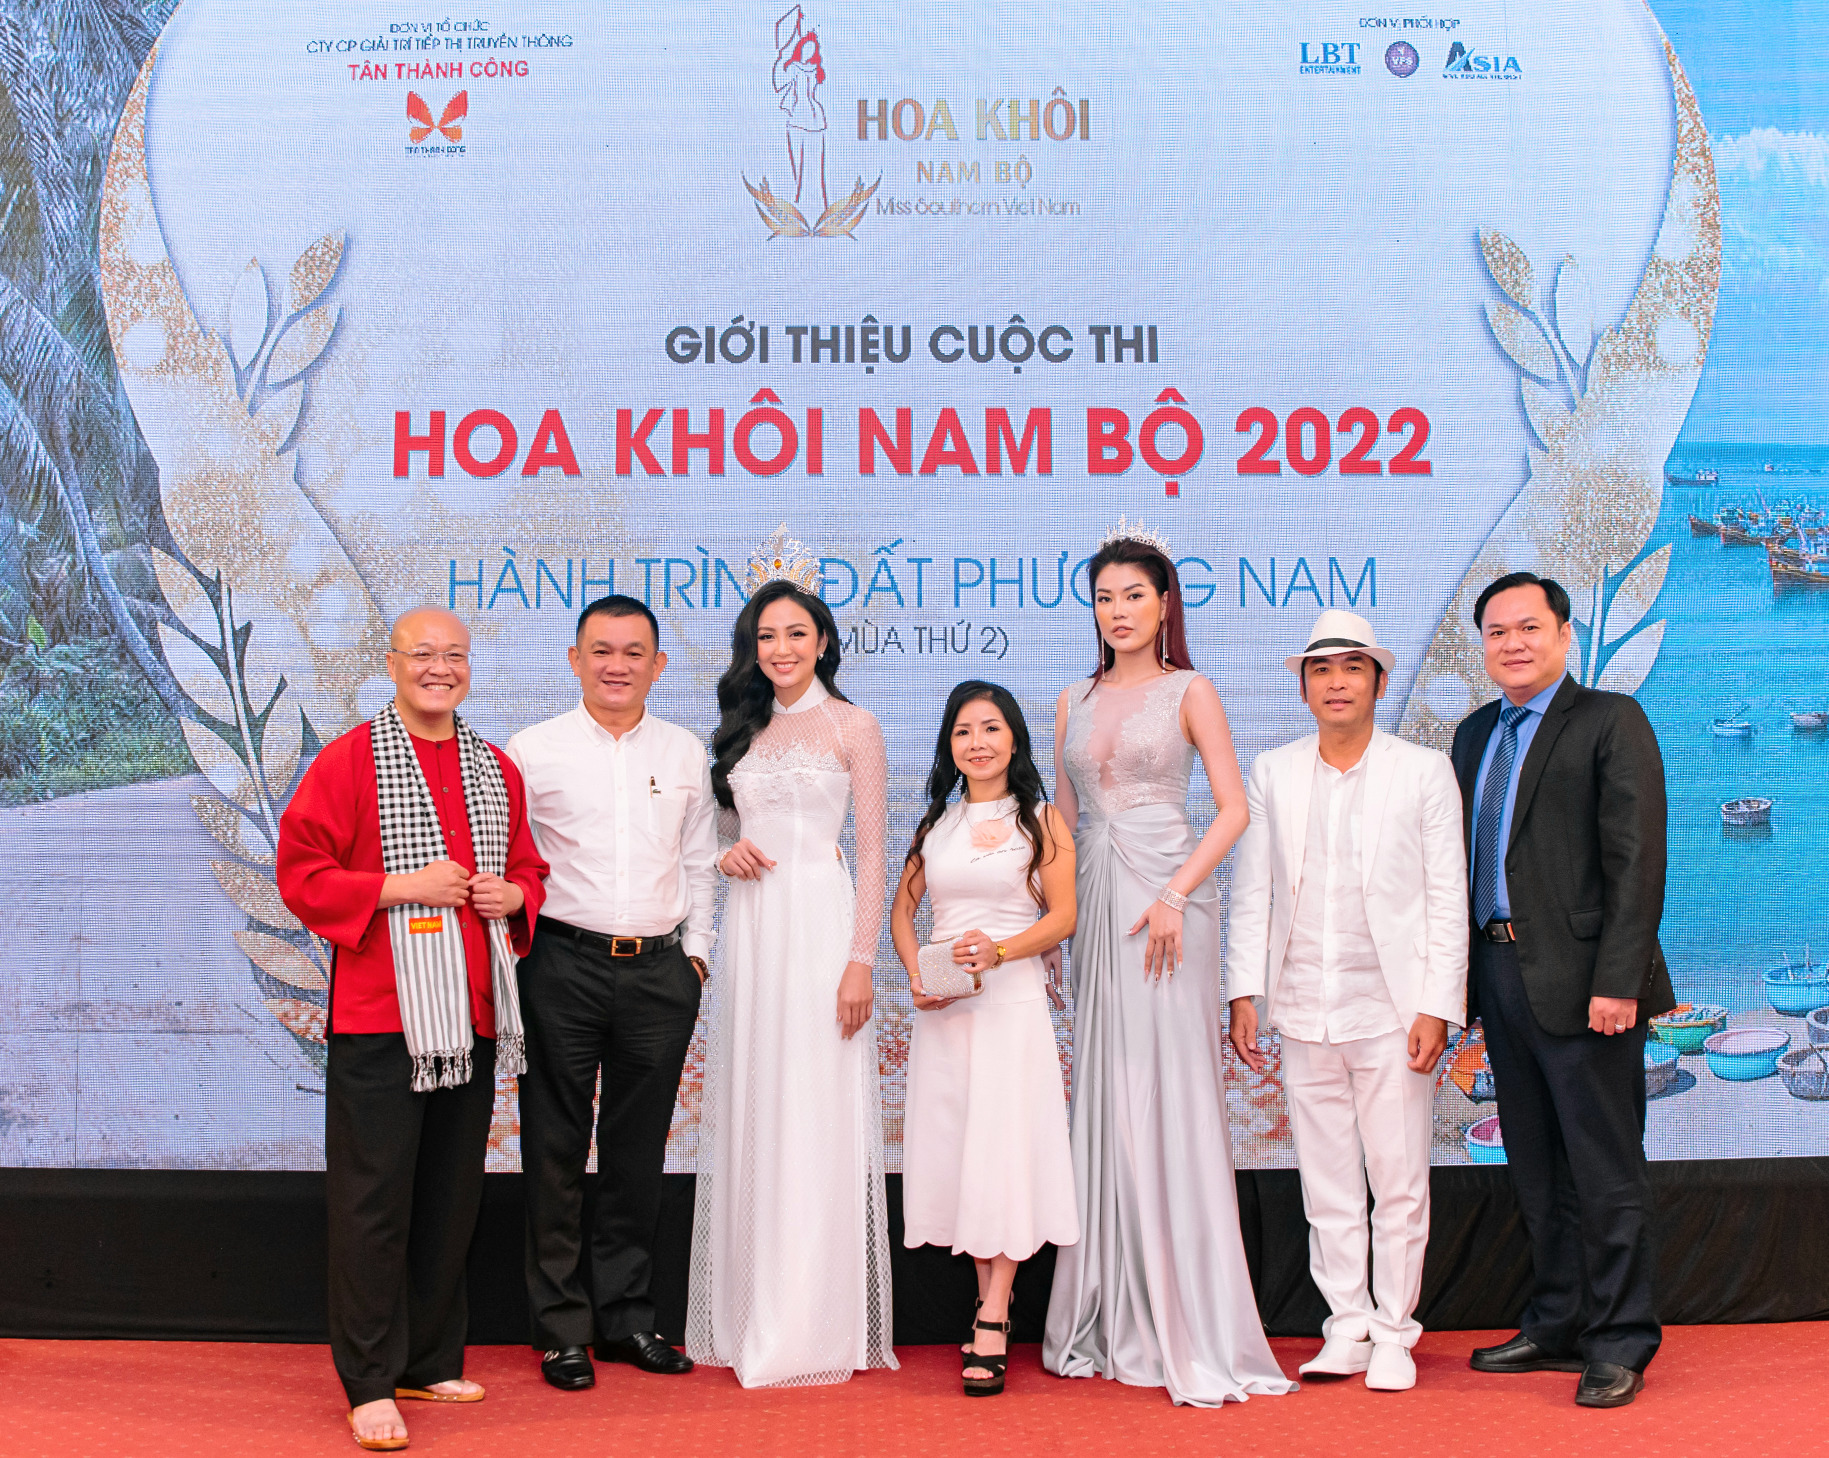 Cuộc thi Hoa Khôi Nam Bộ 2022 là chương trình giải trí được tổ chức ấn tượng, mới lạ.